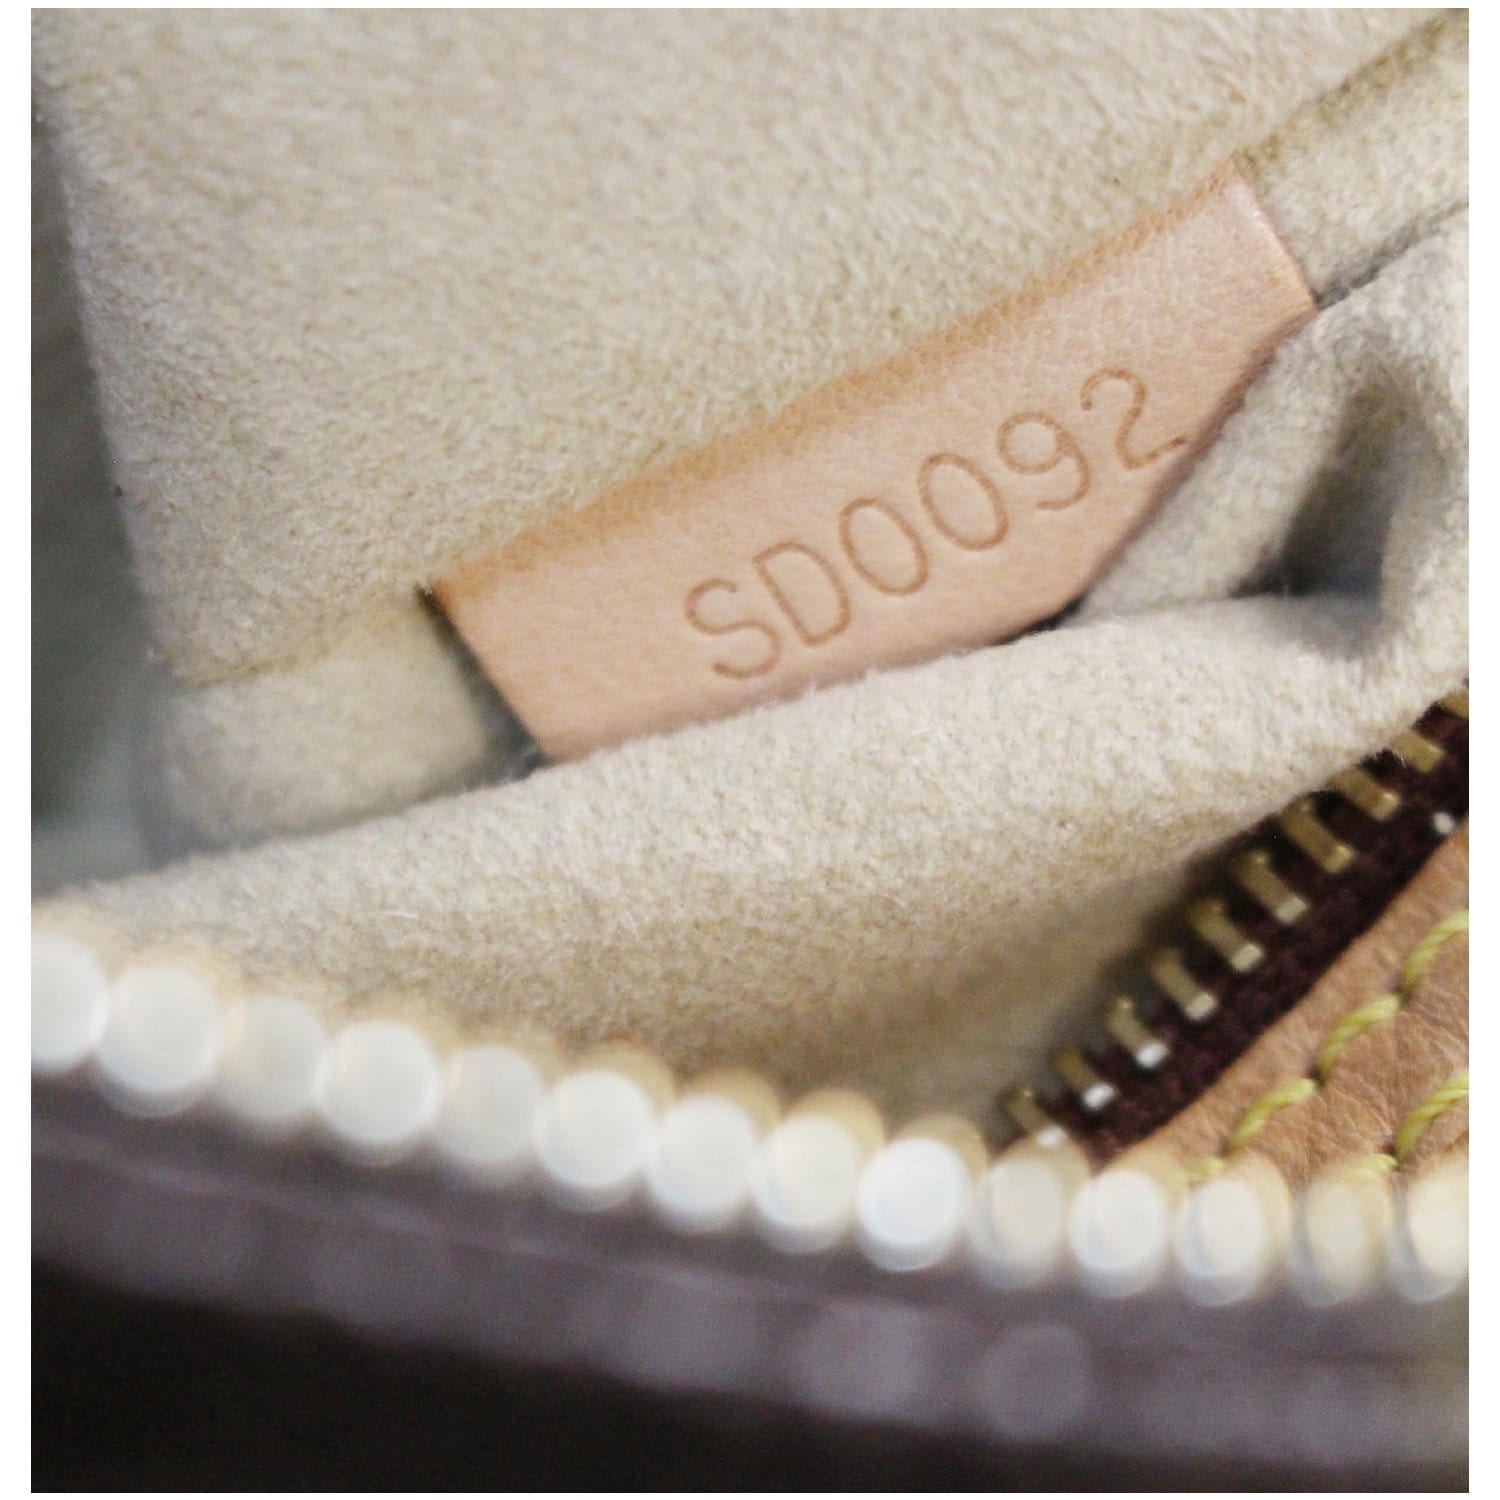 Looping cloth handbag Louis Vuitton Brown in Cloth - 32413885